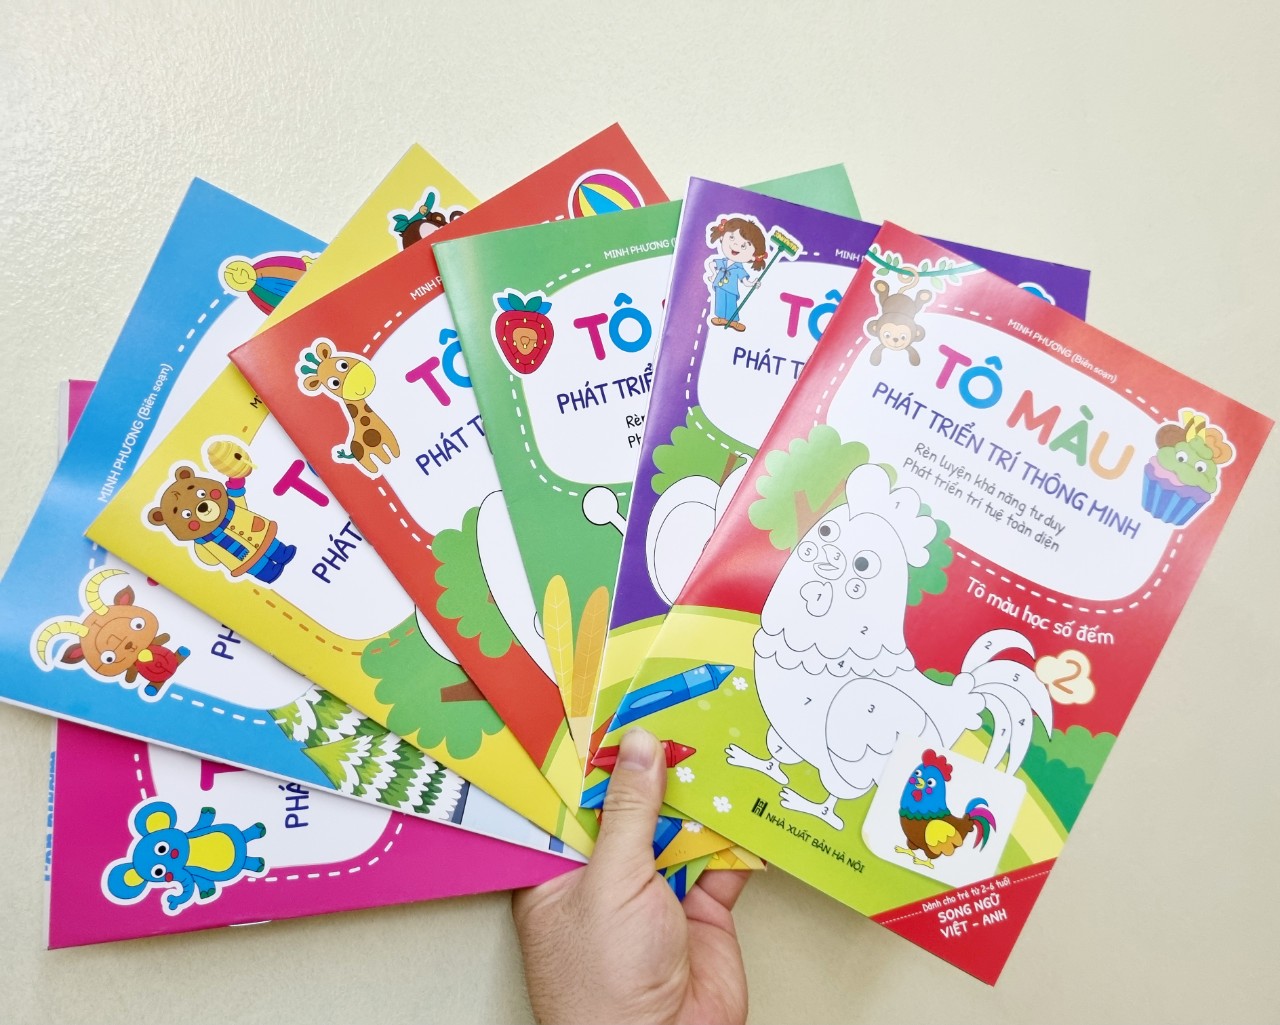 Tô màu phát triển trí thông minh - Tô màu song ngữ Anh - Việt (Túi 8 cuốn, dành cho trẻ 2 - 6 tuổi)